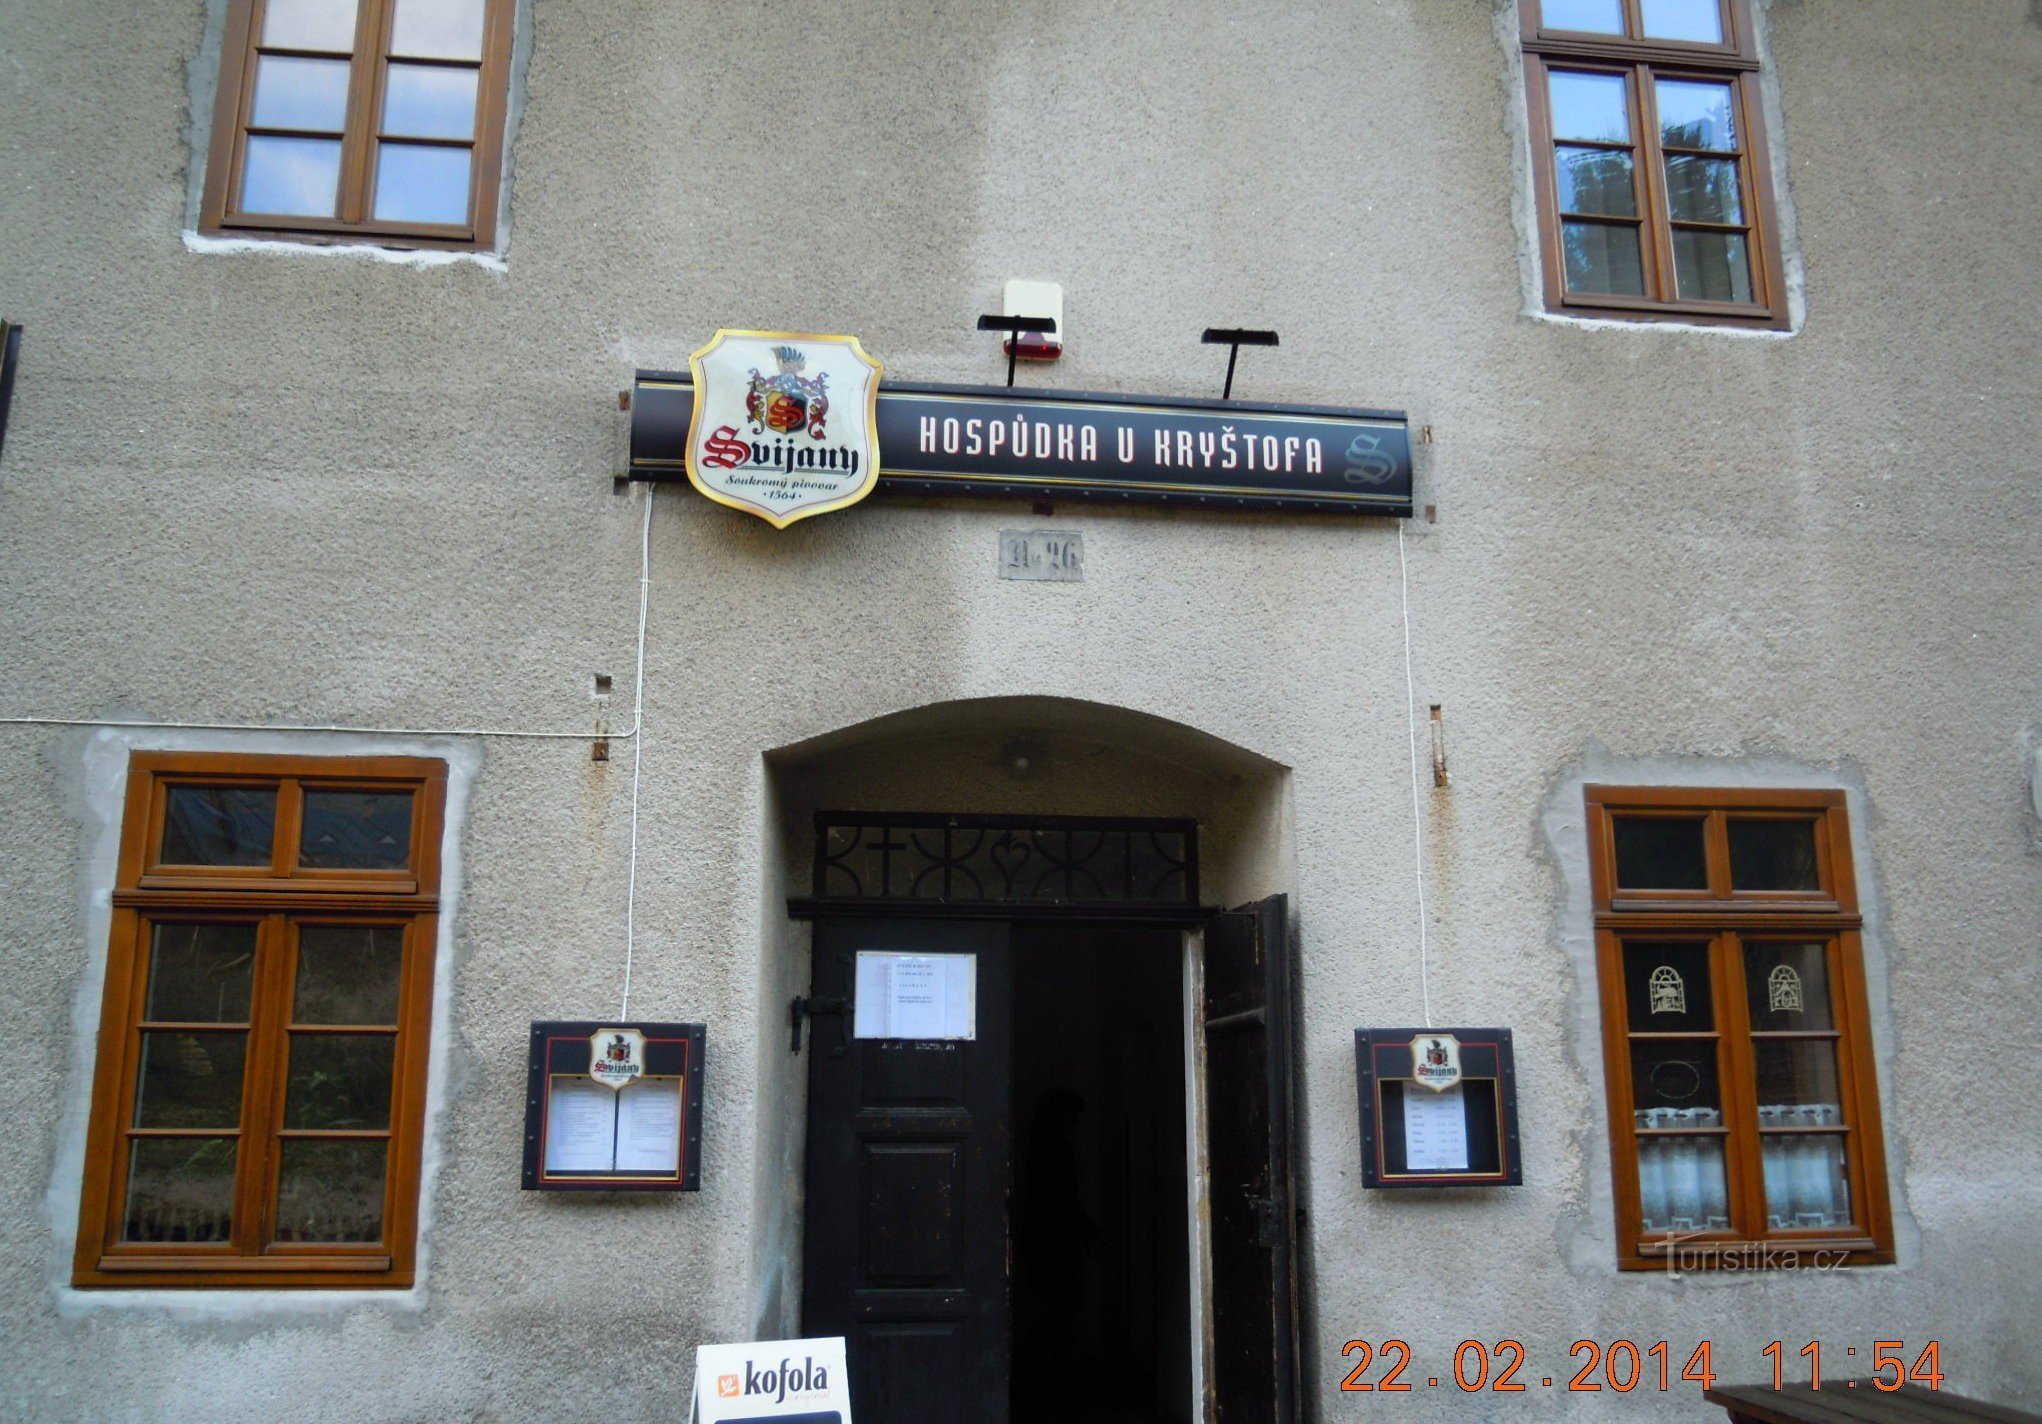 pub in Kryštofova údolí in 2014